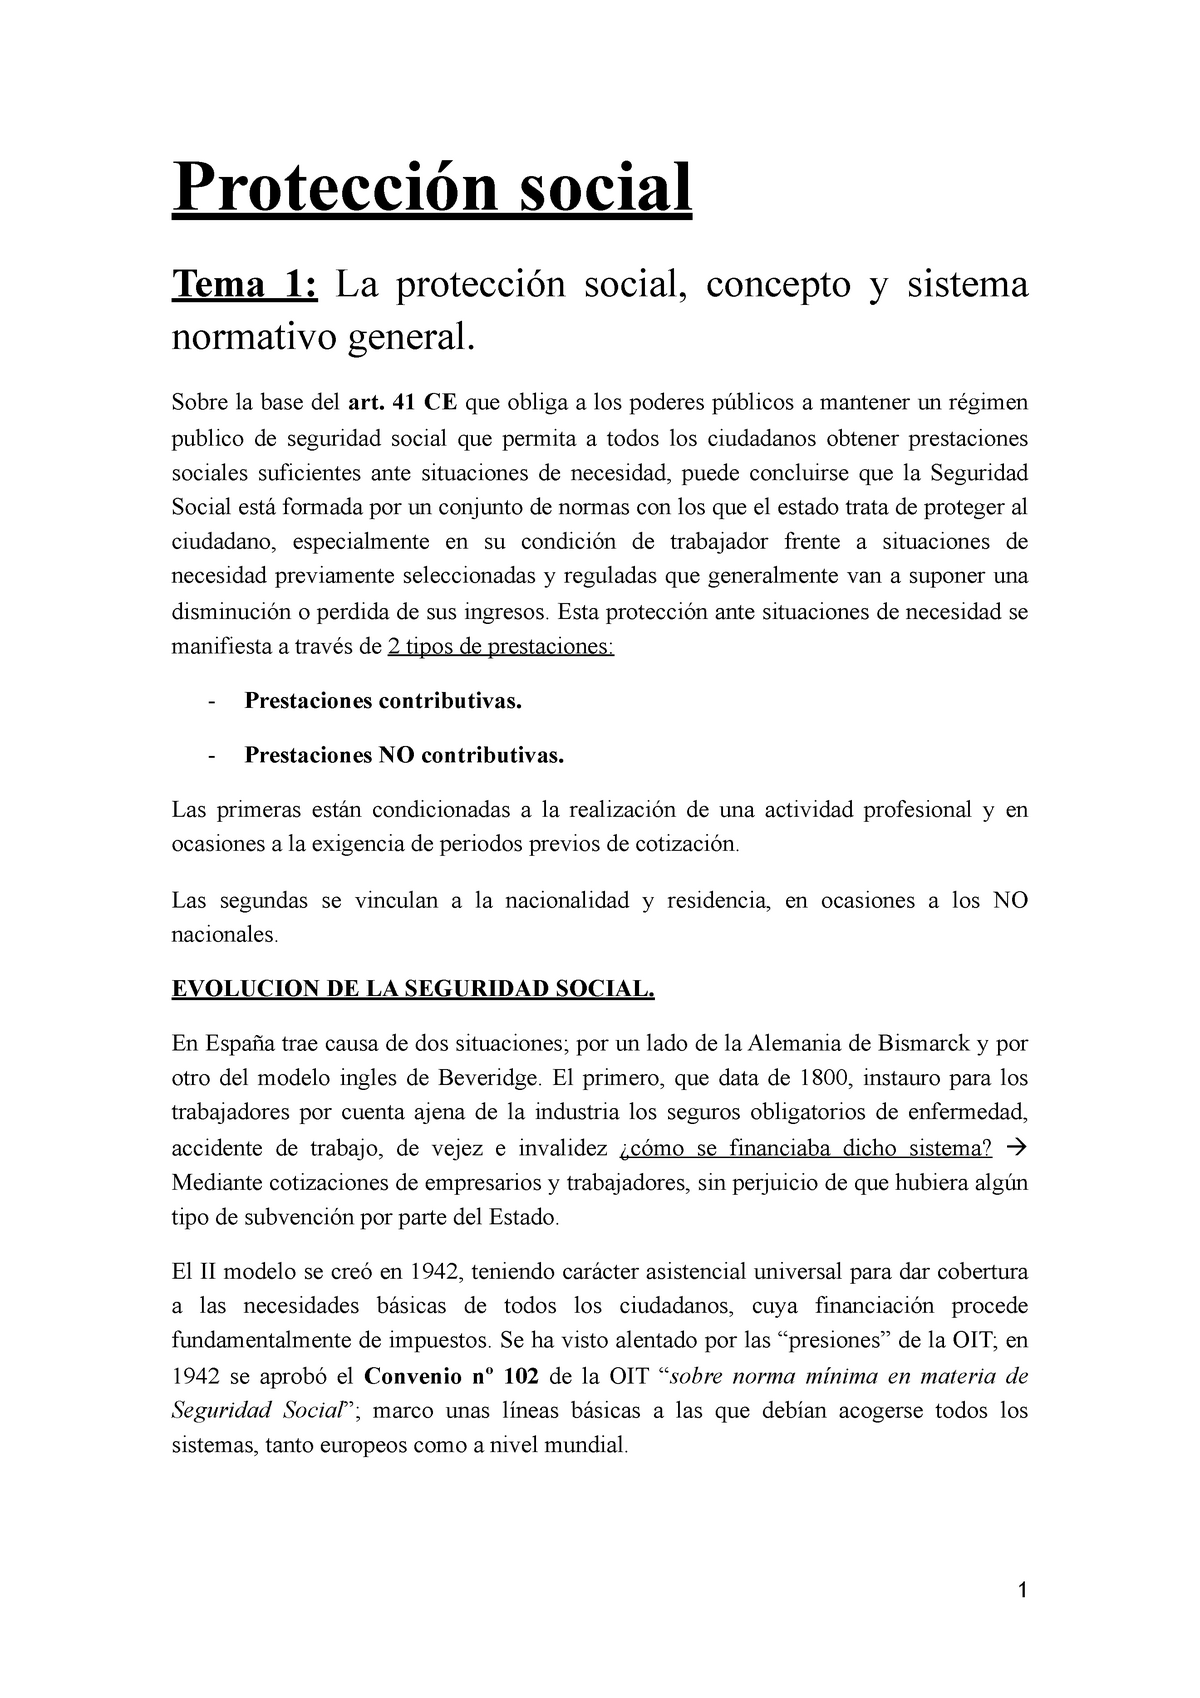 Proteccion social - Protección social Tema 1: La protección social,  concepto y sistema normativo - Studocu